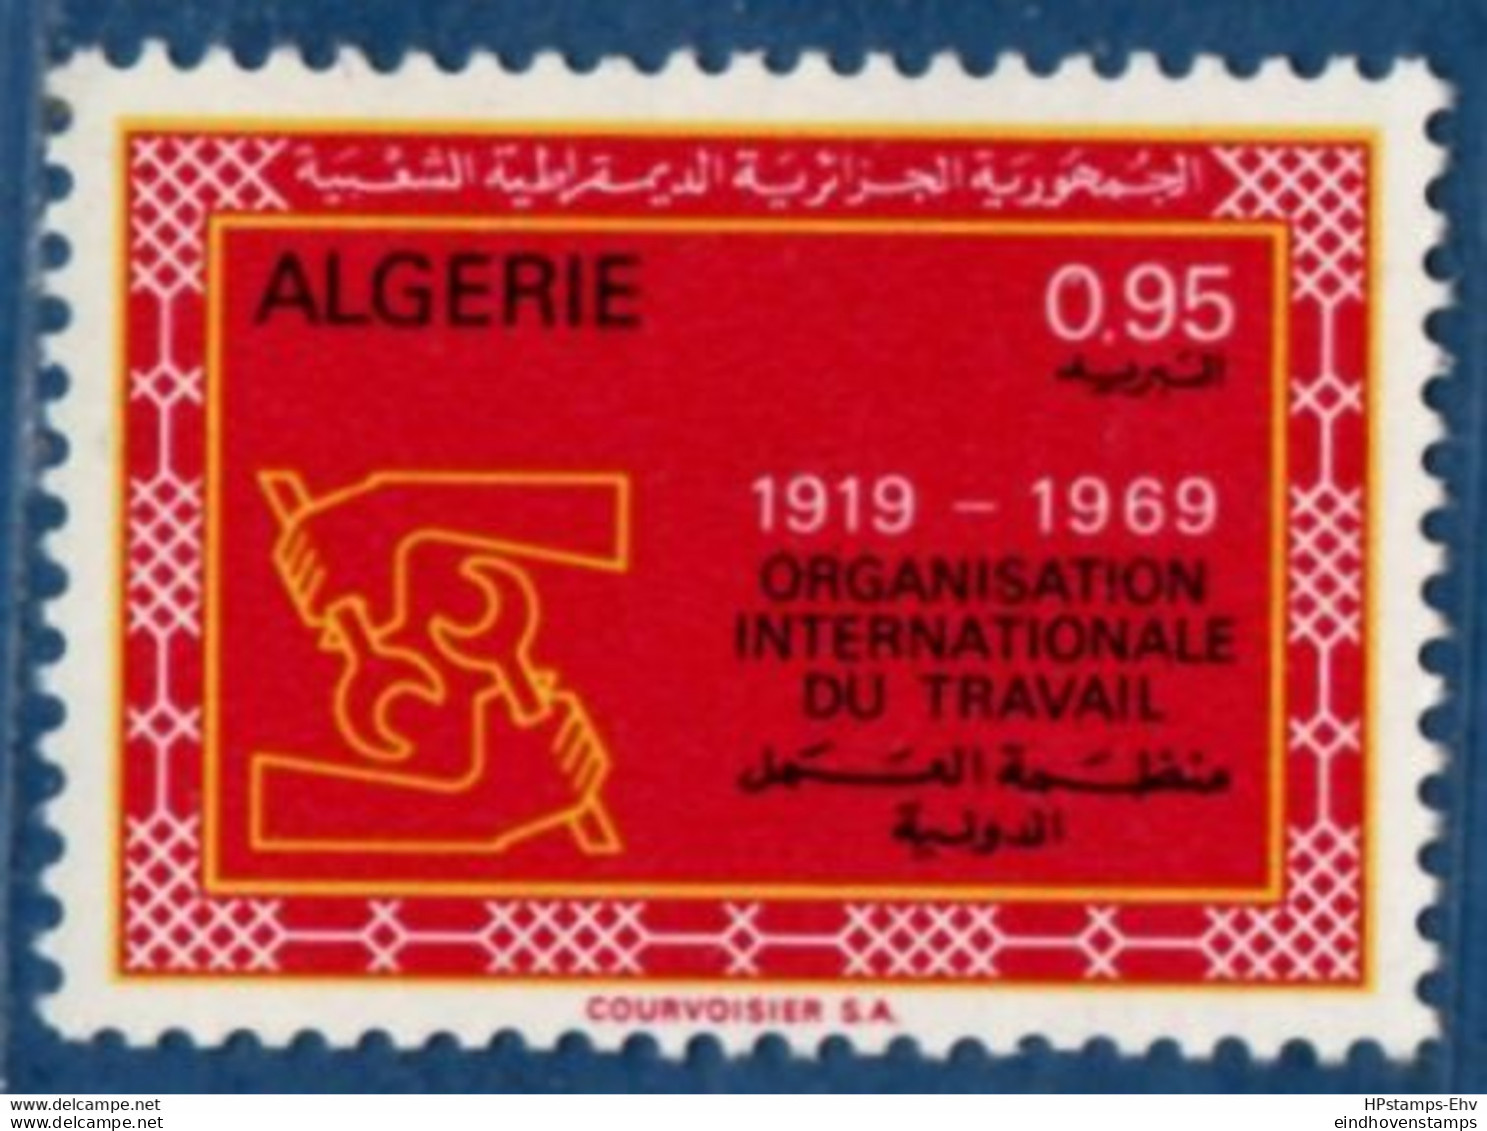 Algeria 1969, ILO Labor Organisation 1 Stamp MNH 2105.2408 OIT - ILO